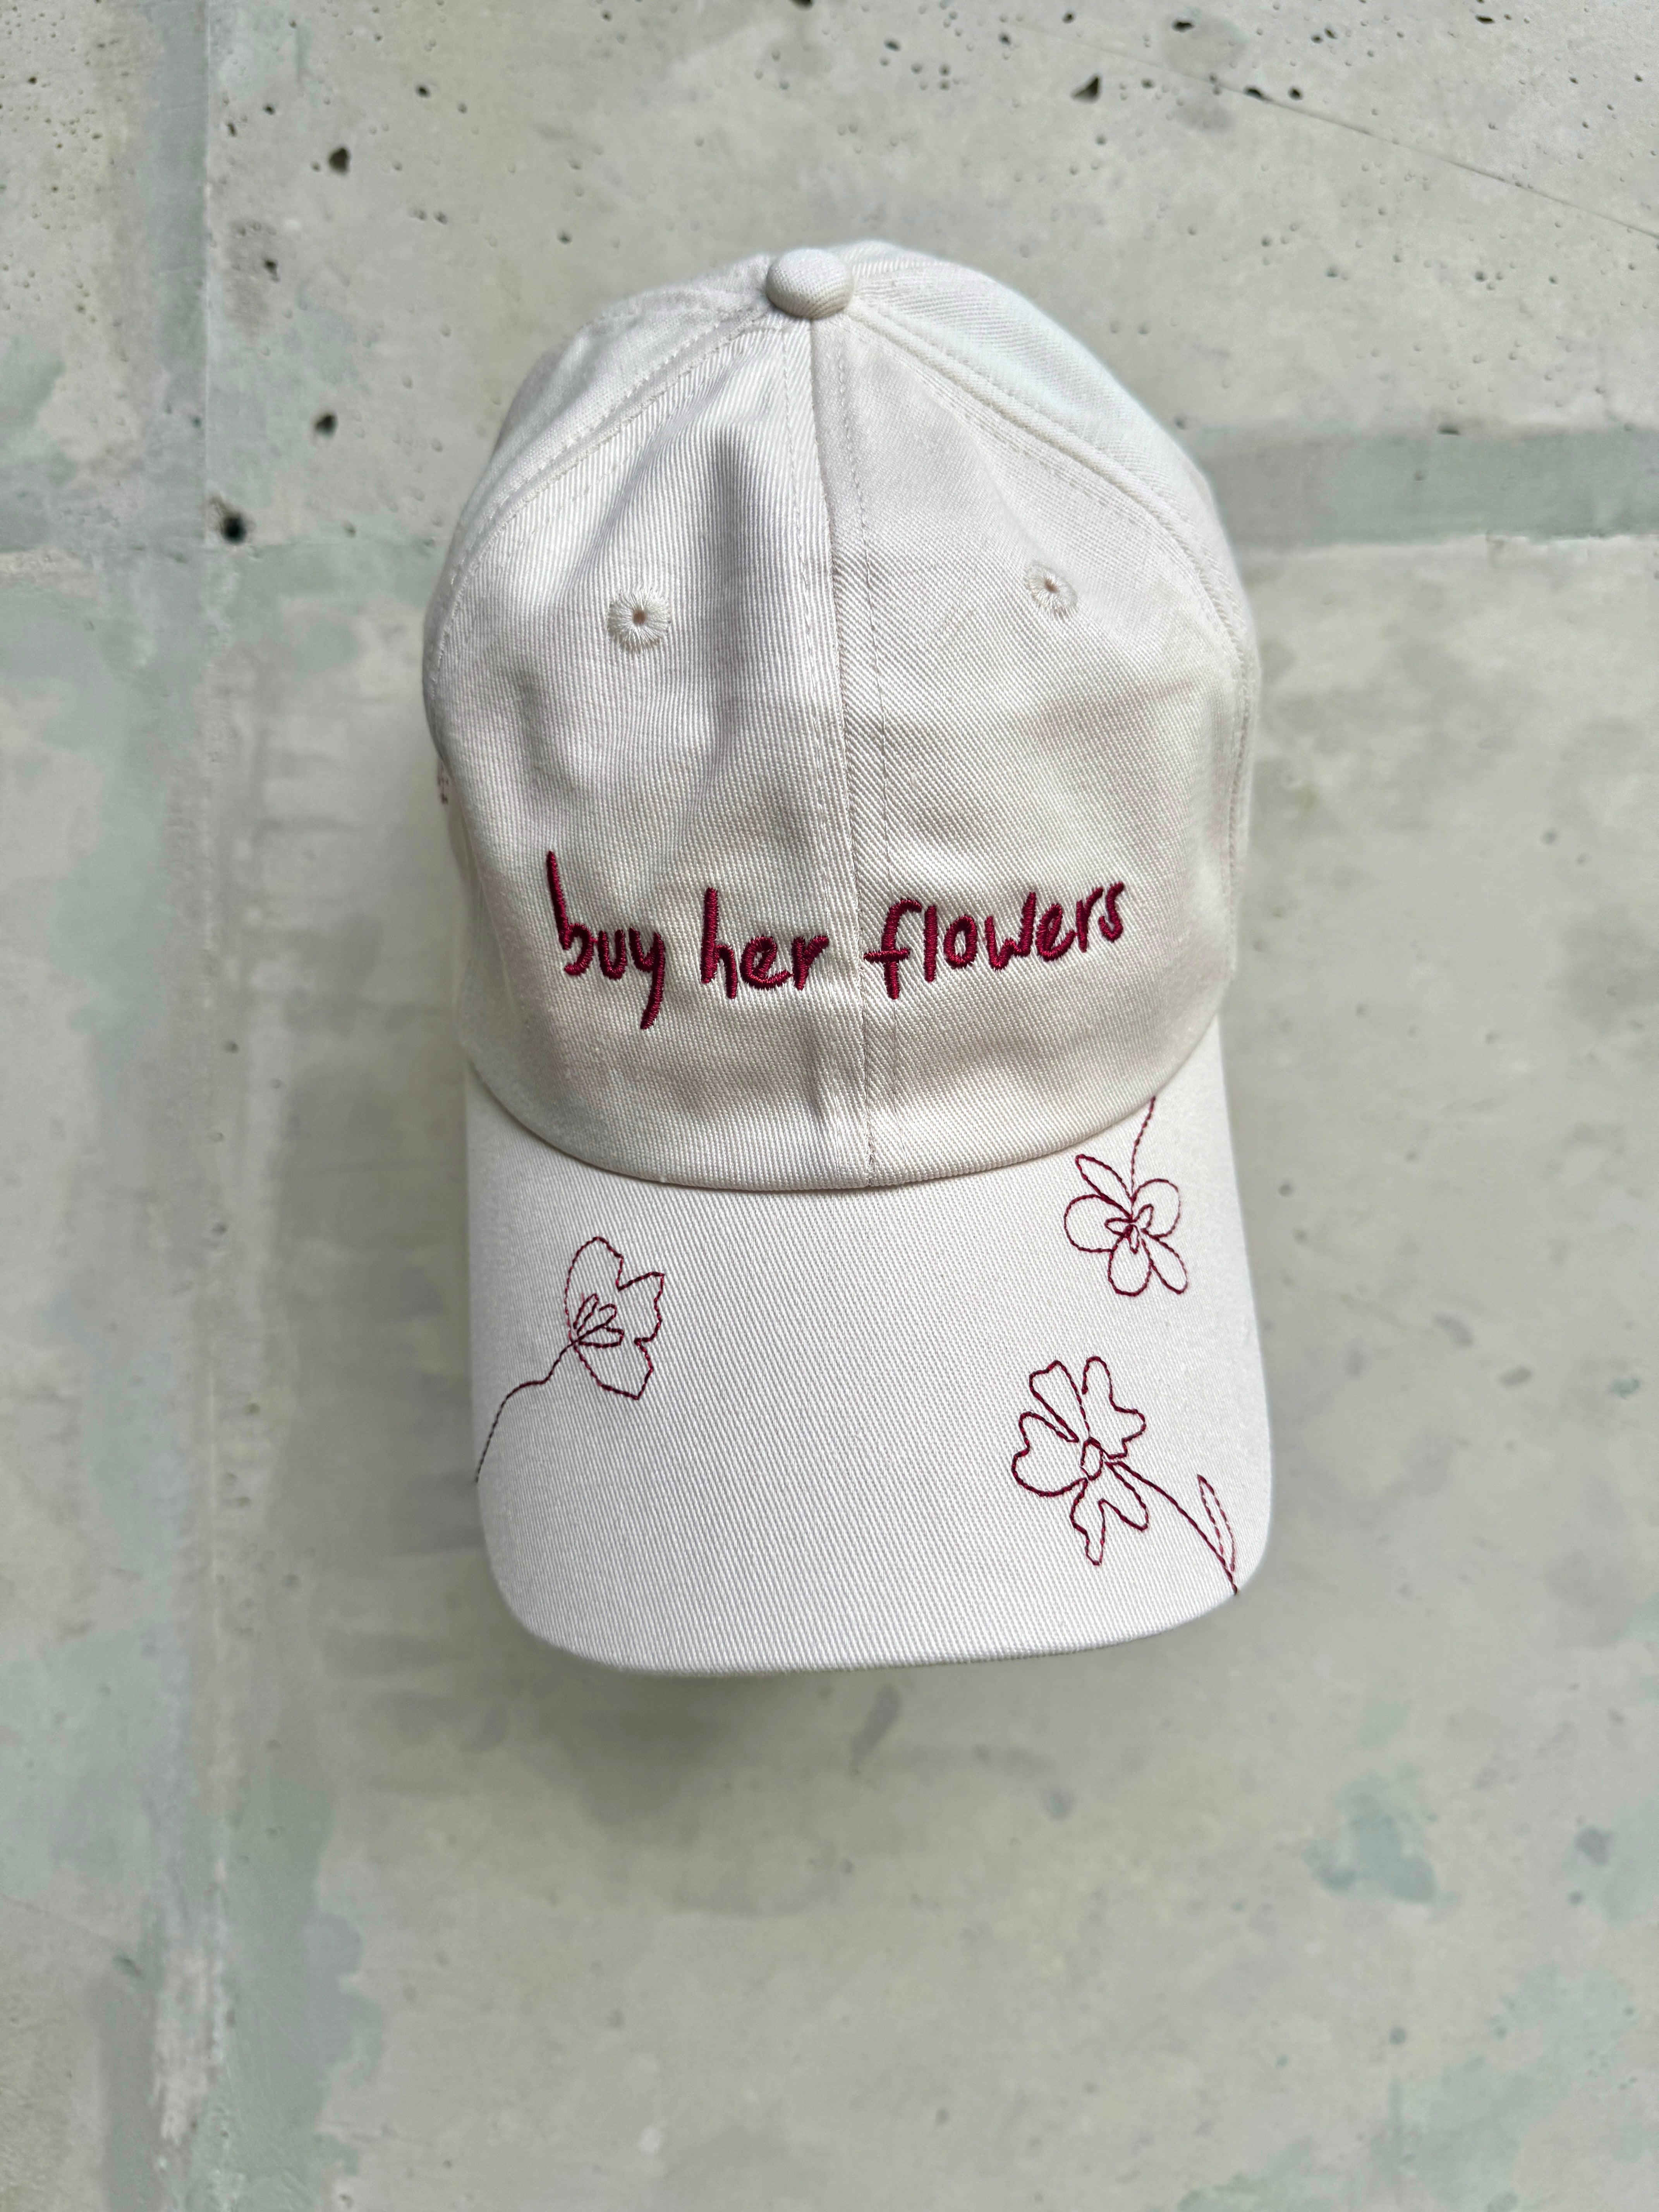 "BUY HER FLOWERS" CAP